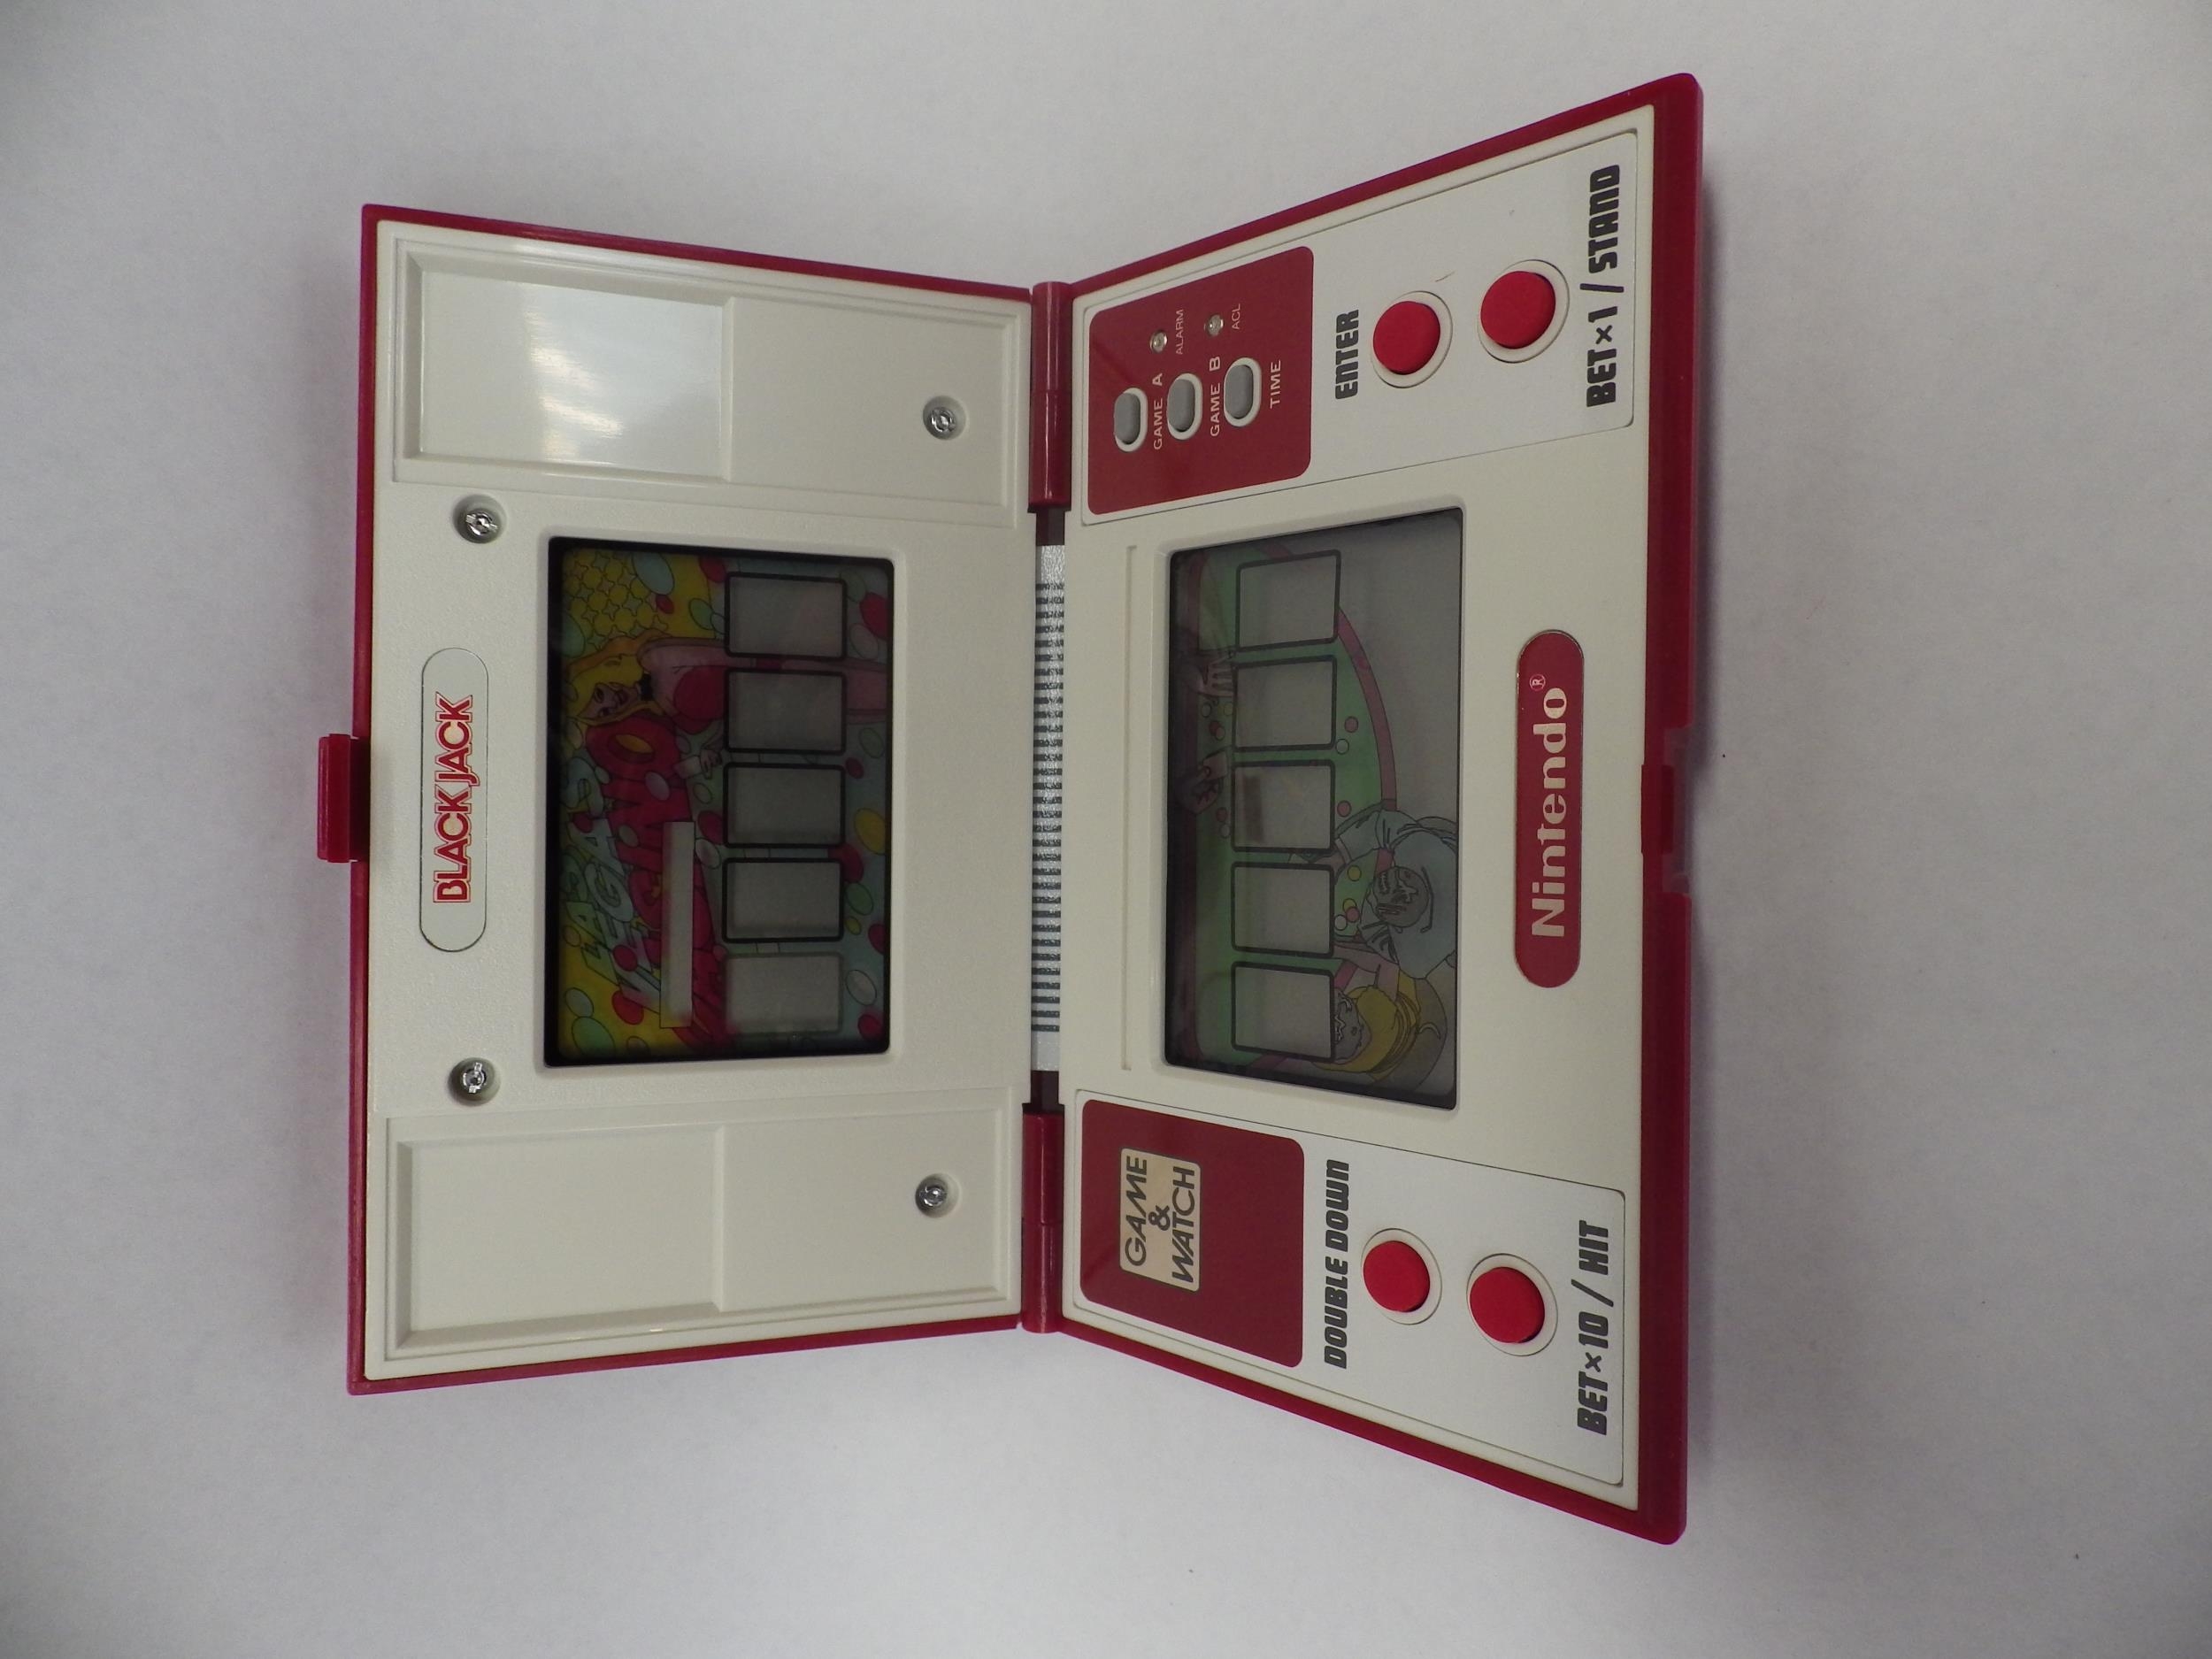 Nintendo Game & Watch Multi Screen Blackjack handheld electronic game (BJ-60) in original box, - Image 2 of 5